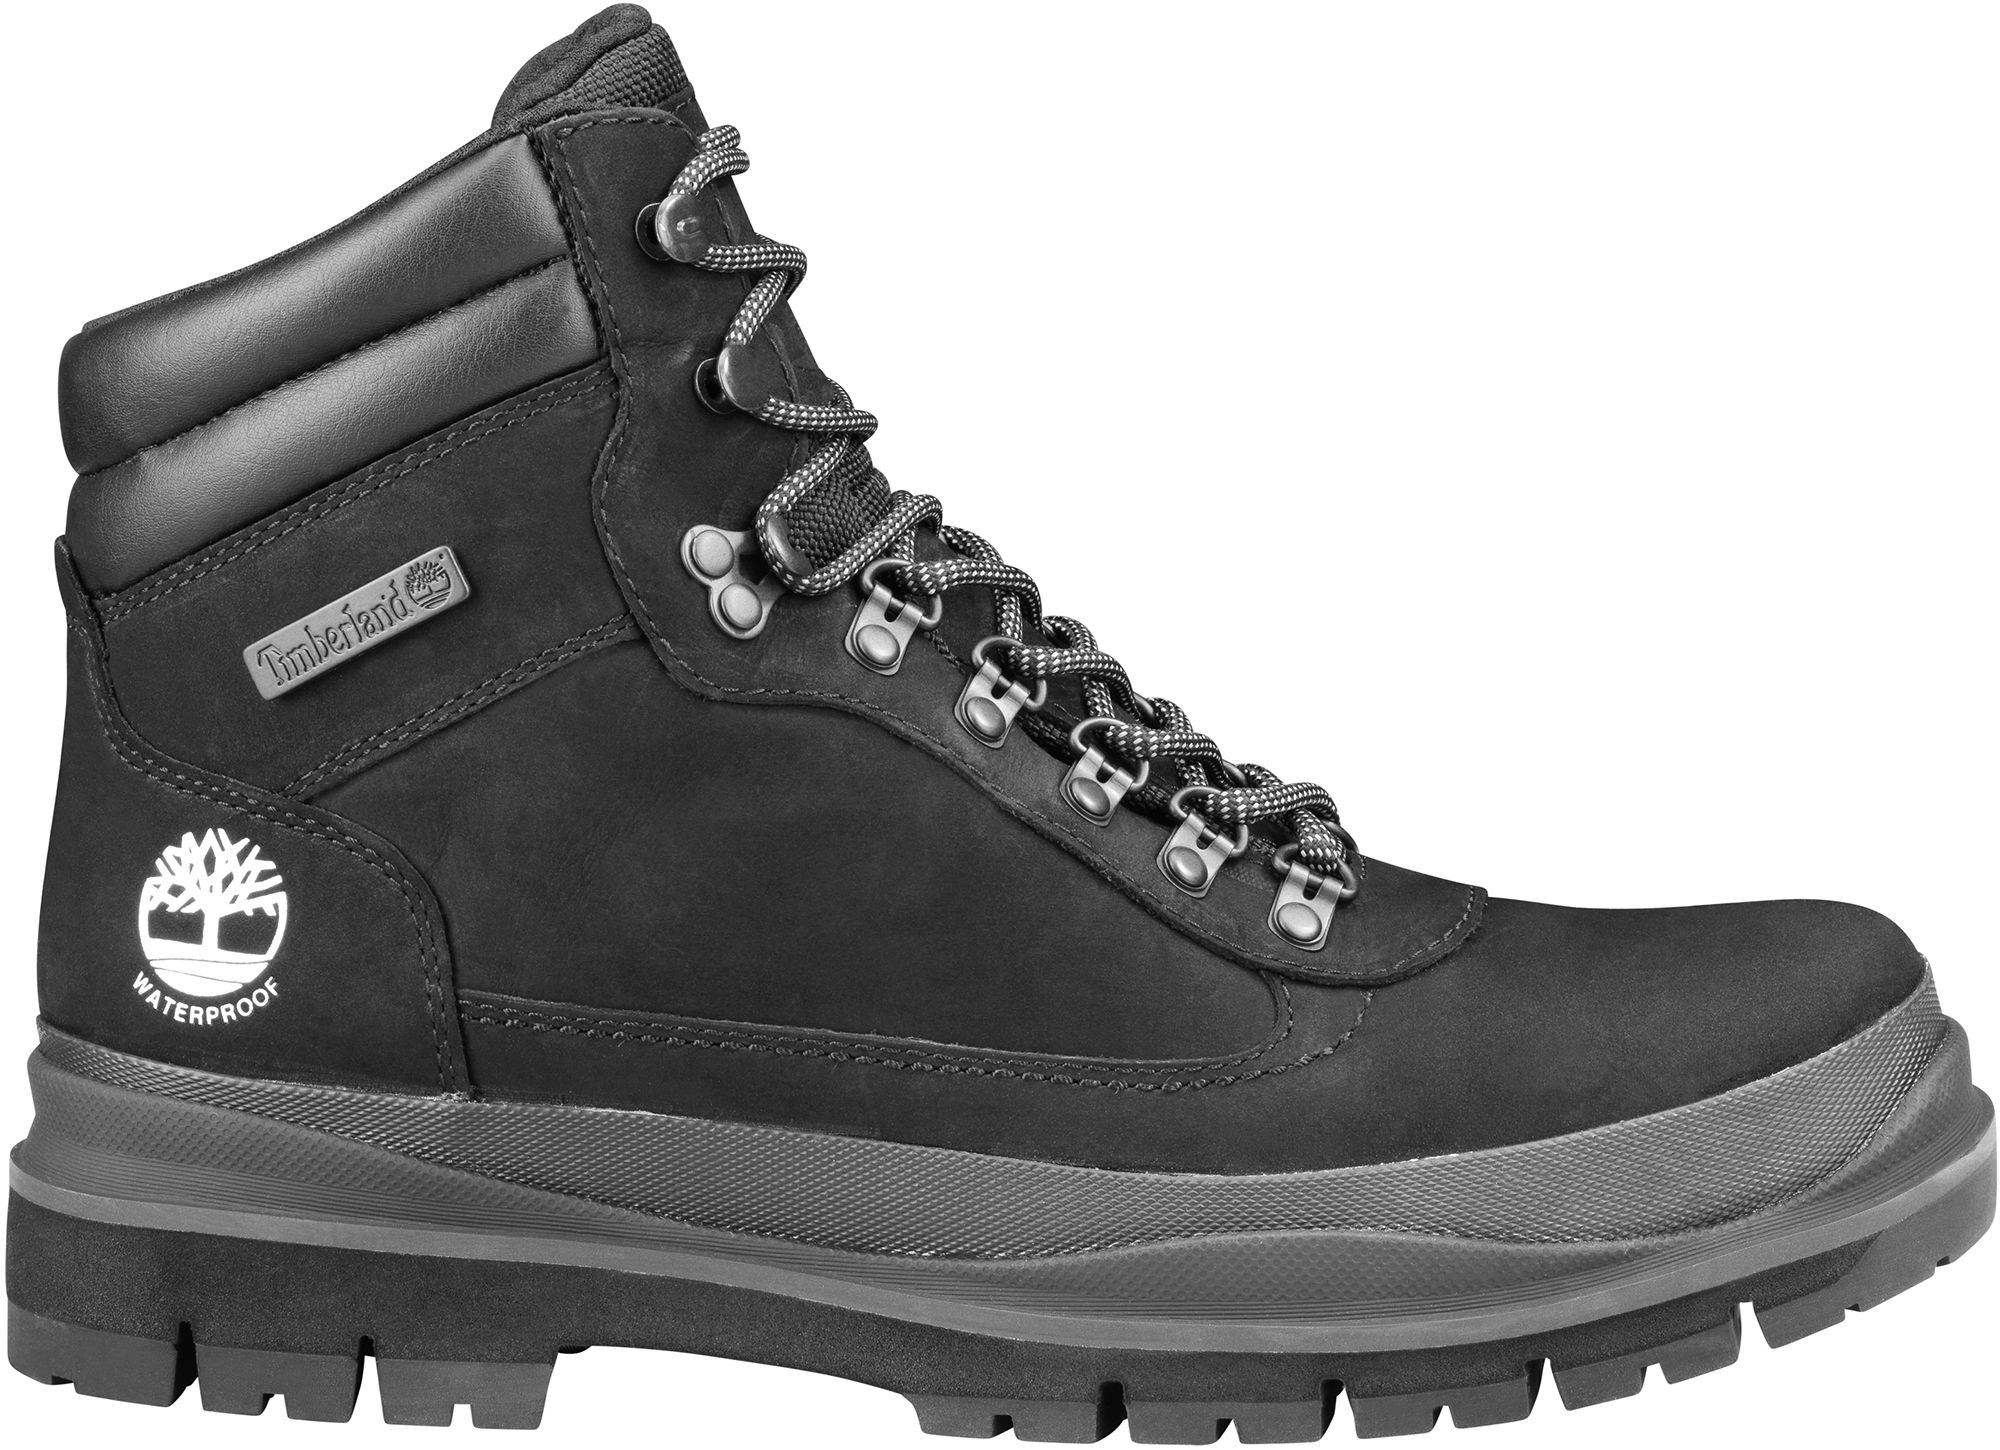 men's outdoor waterproof boots